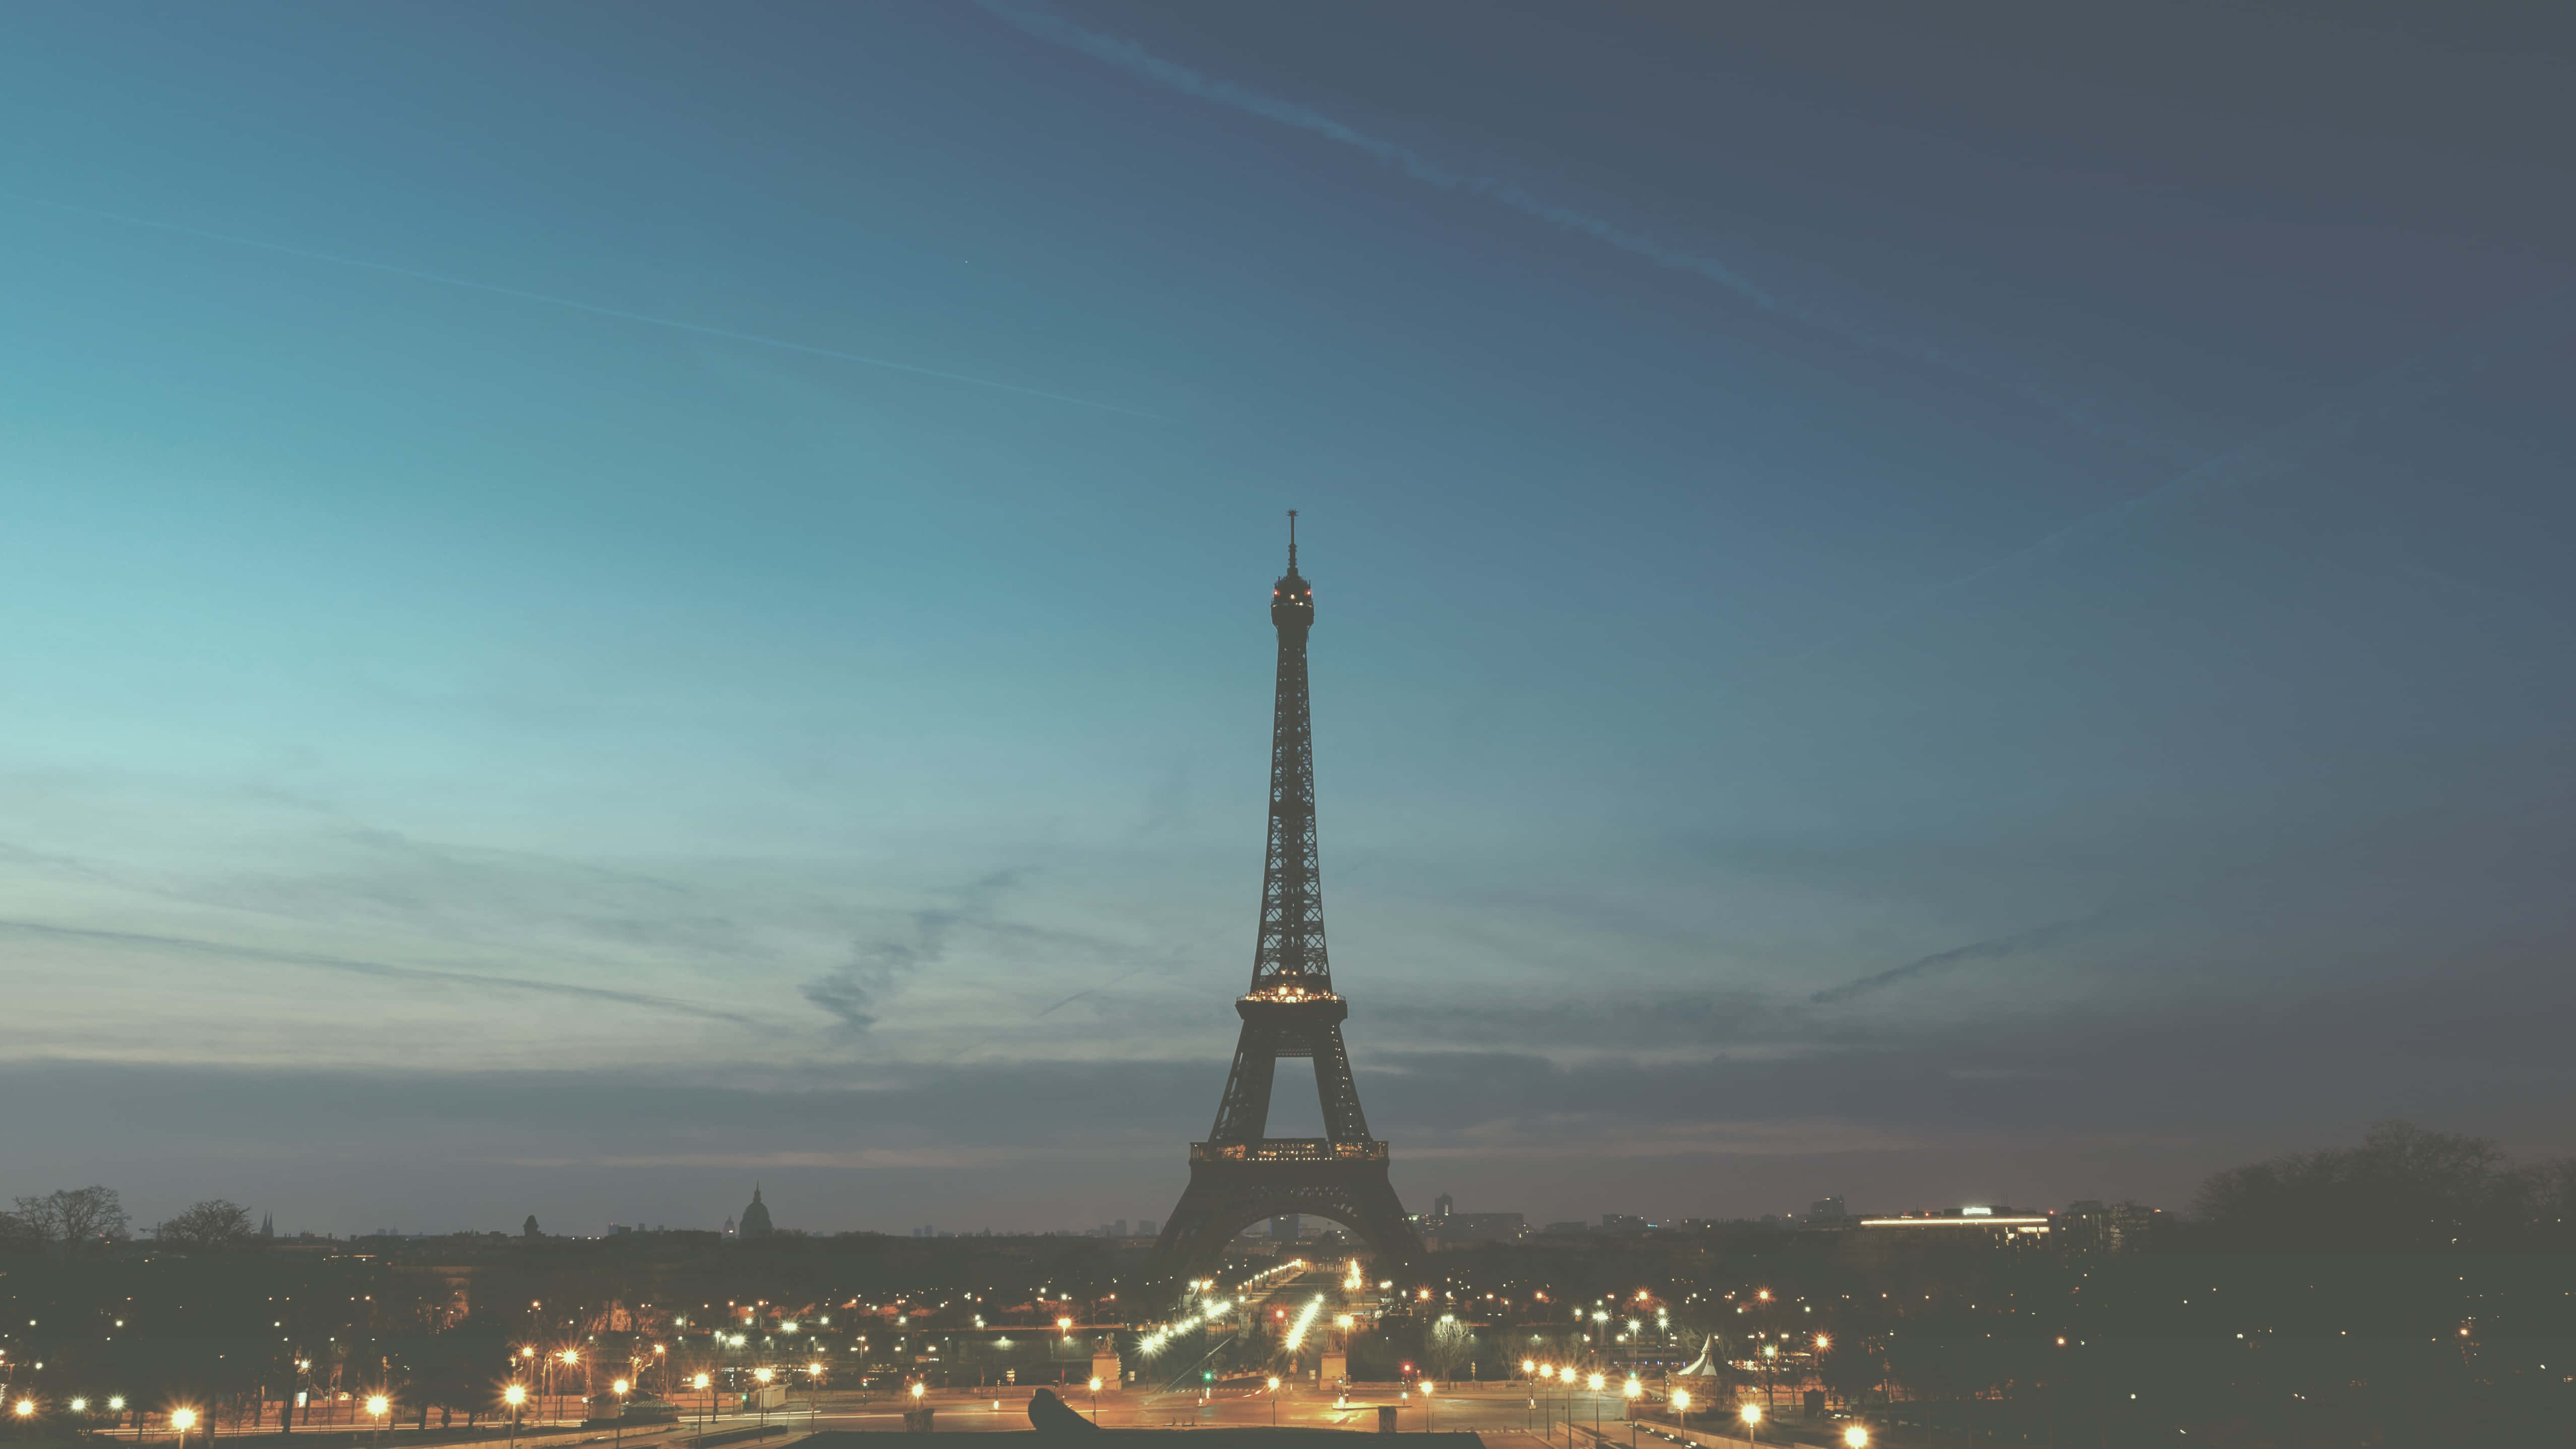 Parísiluminado Por La Torre Eiffel De Noche.